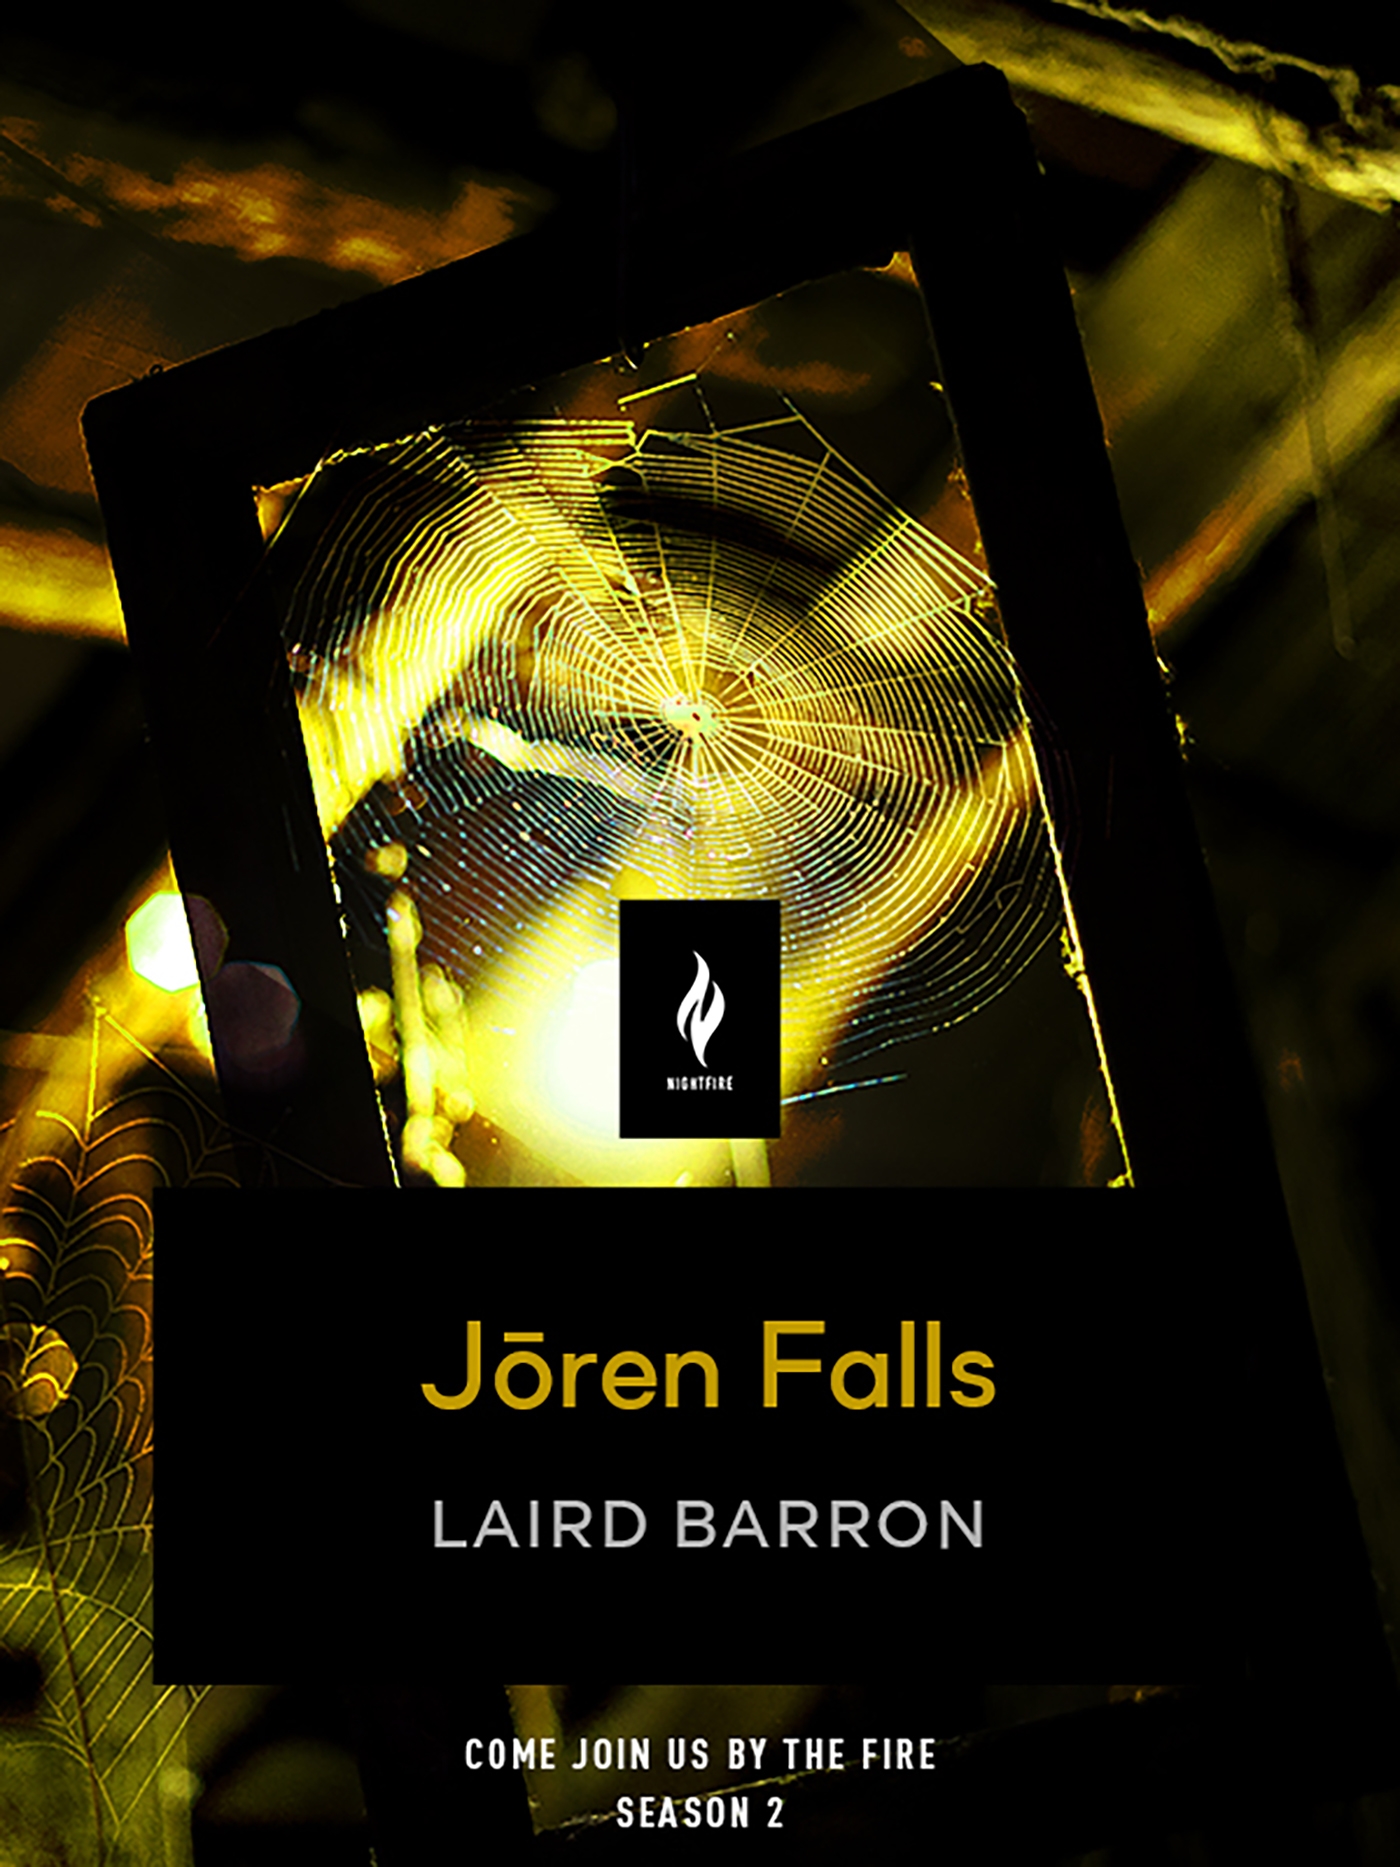 Joren Falls : A Short Horror Story by Laird Barron